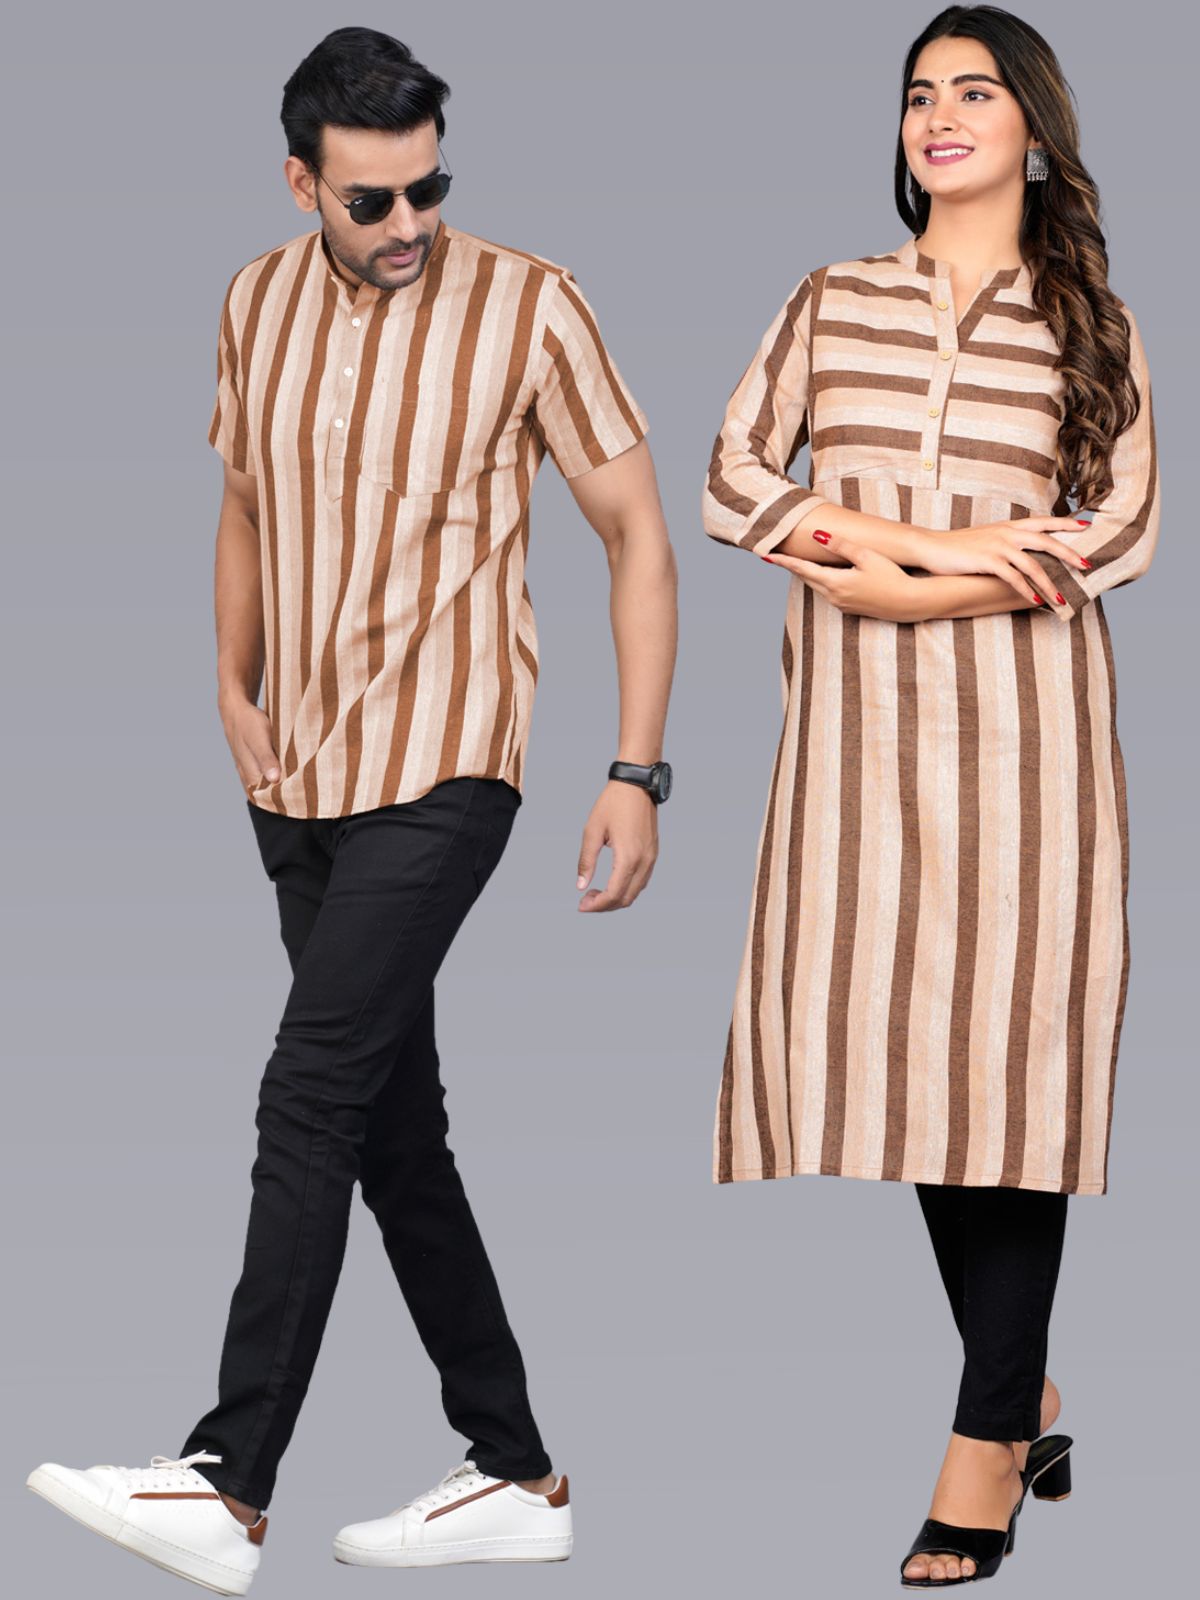 AIRAWATT | Gents kurta design, Designer clothes for men, Indian wedding  clothes for men